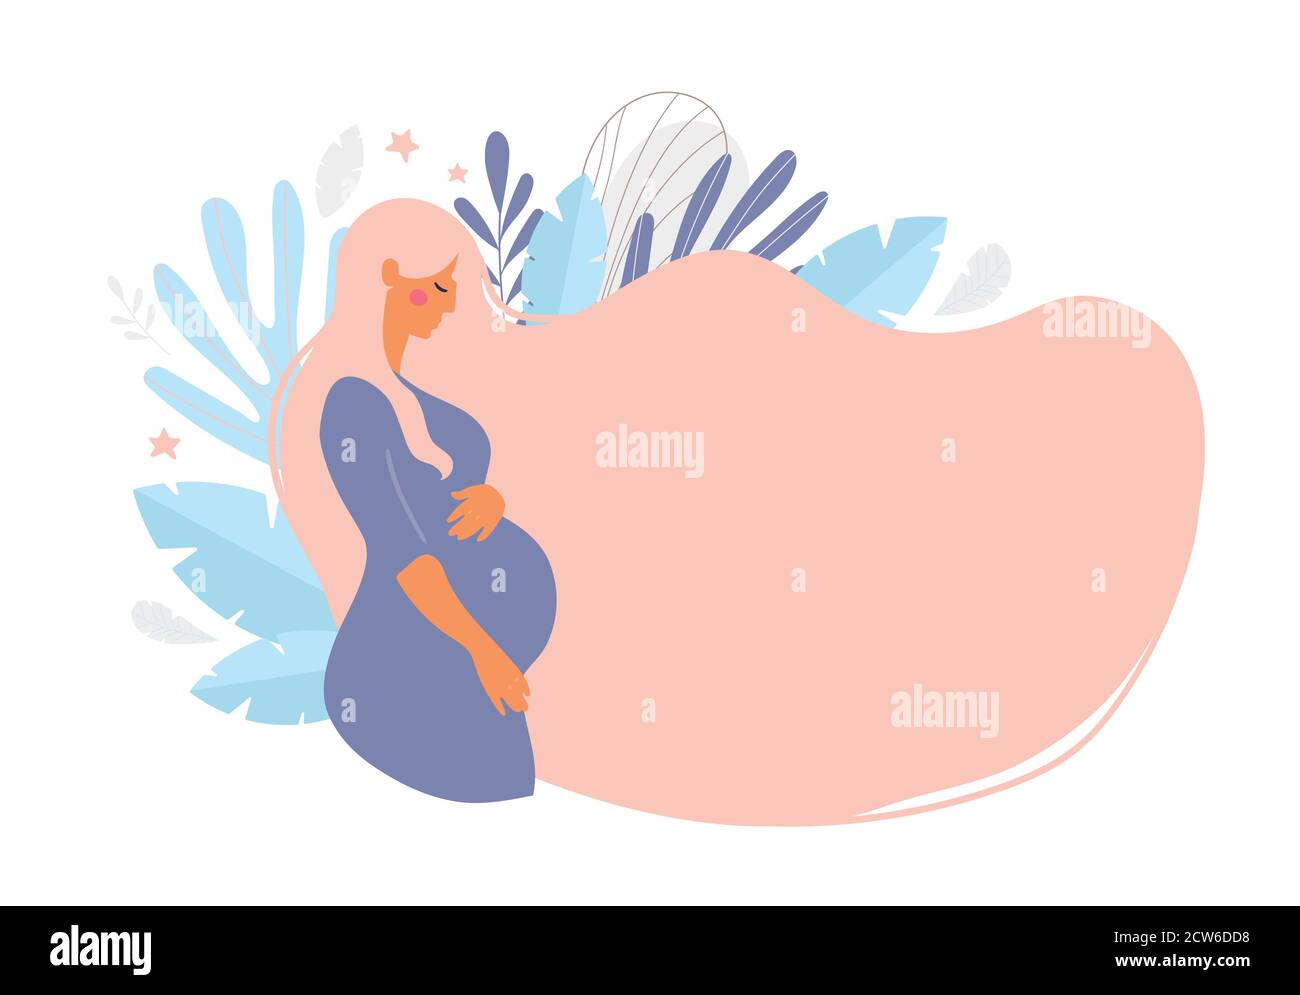 Cute donna incinta con lunghi capelli biondi su uno sfondo di foglie. Il concetto di gravidanza, maternità, famiglia. Design piatto con spazio di copia. Vista laterale della pancia incinta. Vettore stock isolato su sfondo bianco Illustrazione Vettoriale